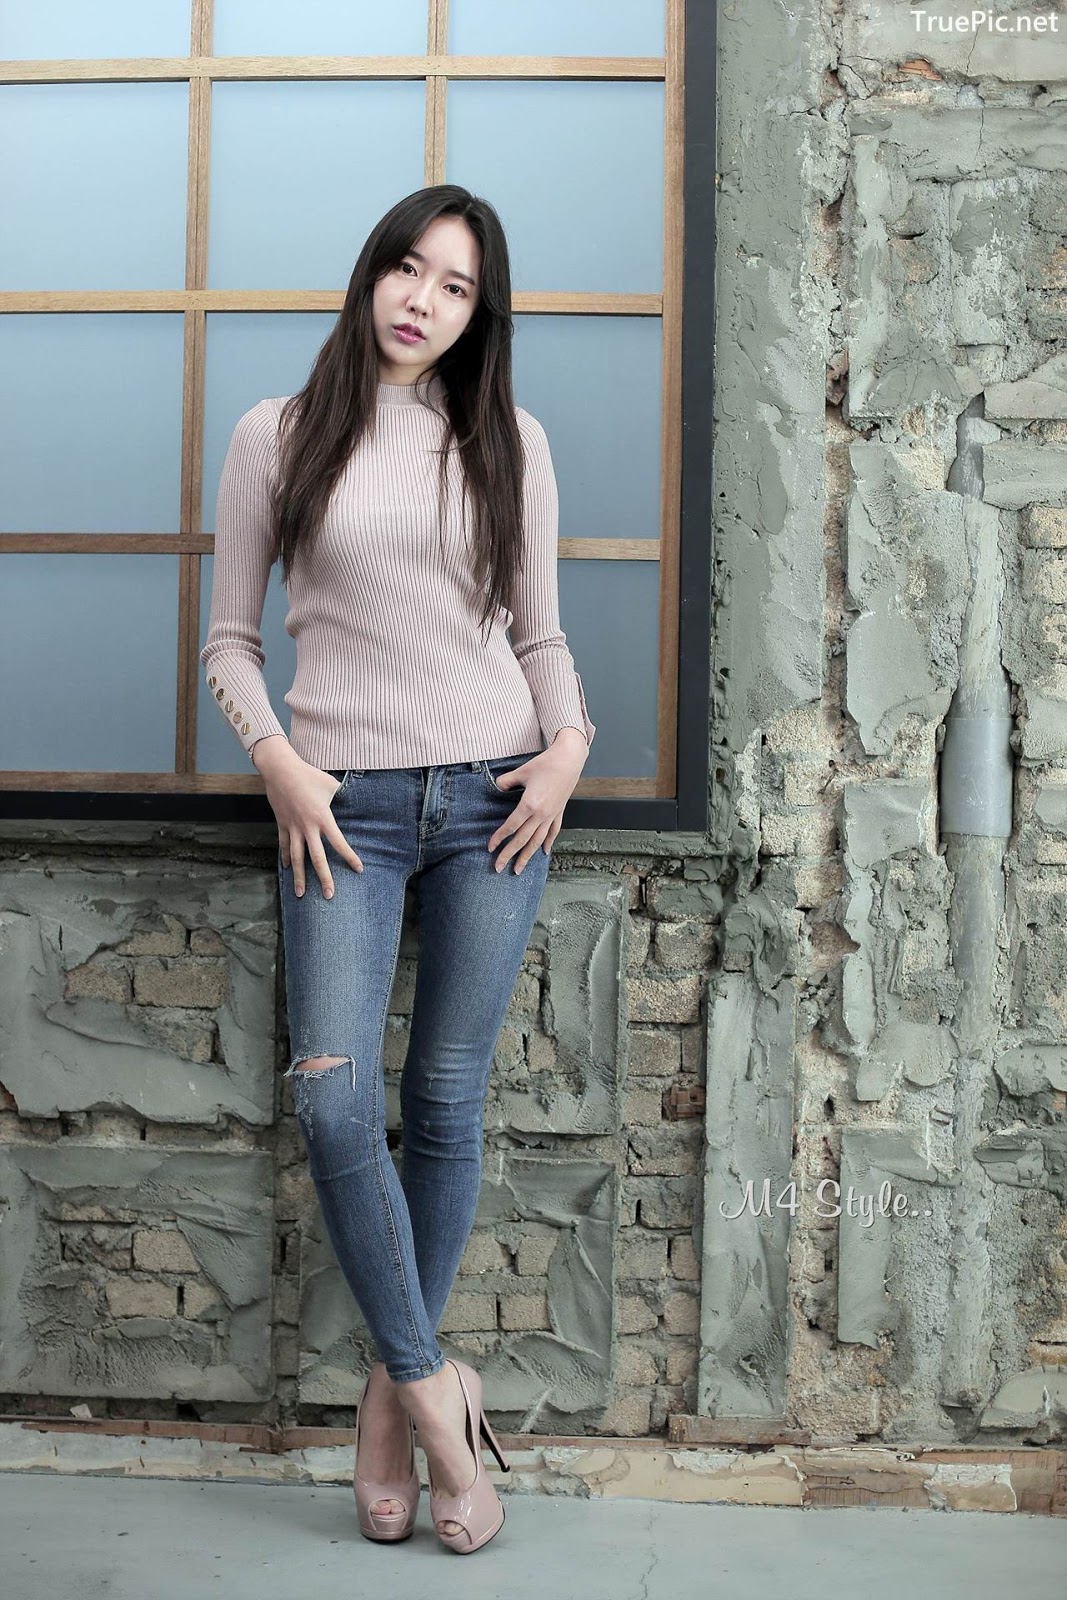 Image-Korean-Hot-Model-Go-Eun-Yang-Indoor-Photoshoot-Collection-TruePic.net- Picture-95